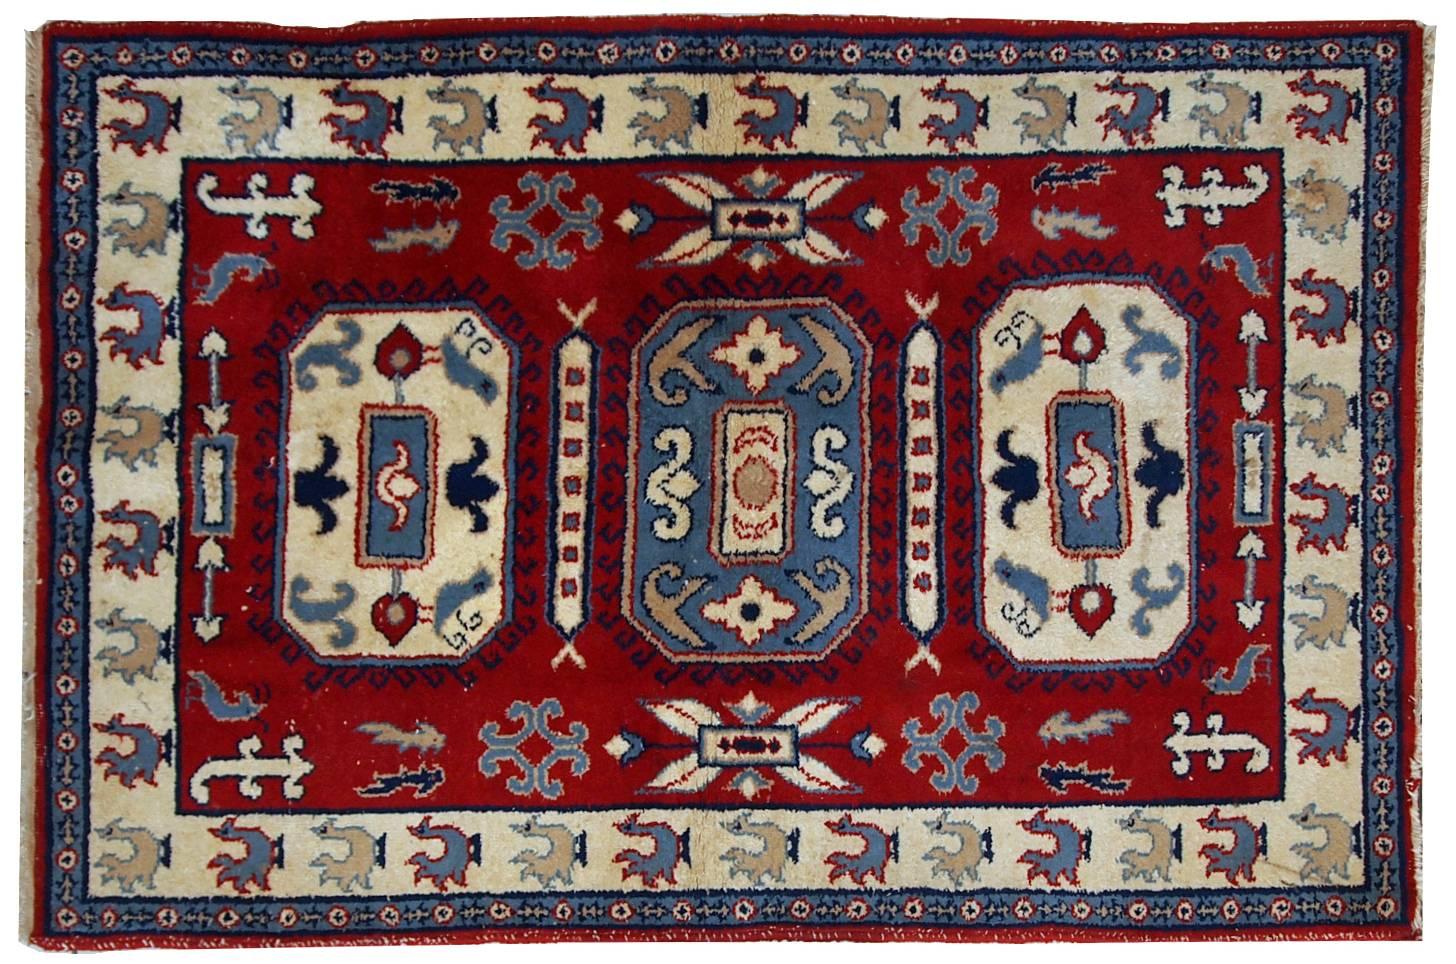 Handgefertigter russischer Vintage-Teppich in tiefrotem Farbton. Die beigefarbene Bordüre ist mit Hähnen verziert. Im Allgemeinen ist der Teppich im Tribal-Design gehalten. Der Teppich ist aus Wolle gefertigt und sehr dick und warm. Es befindet sich